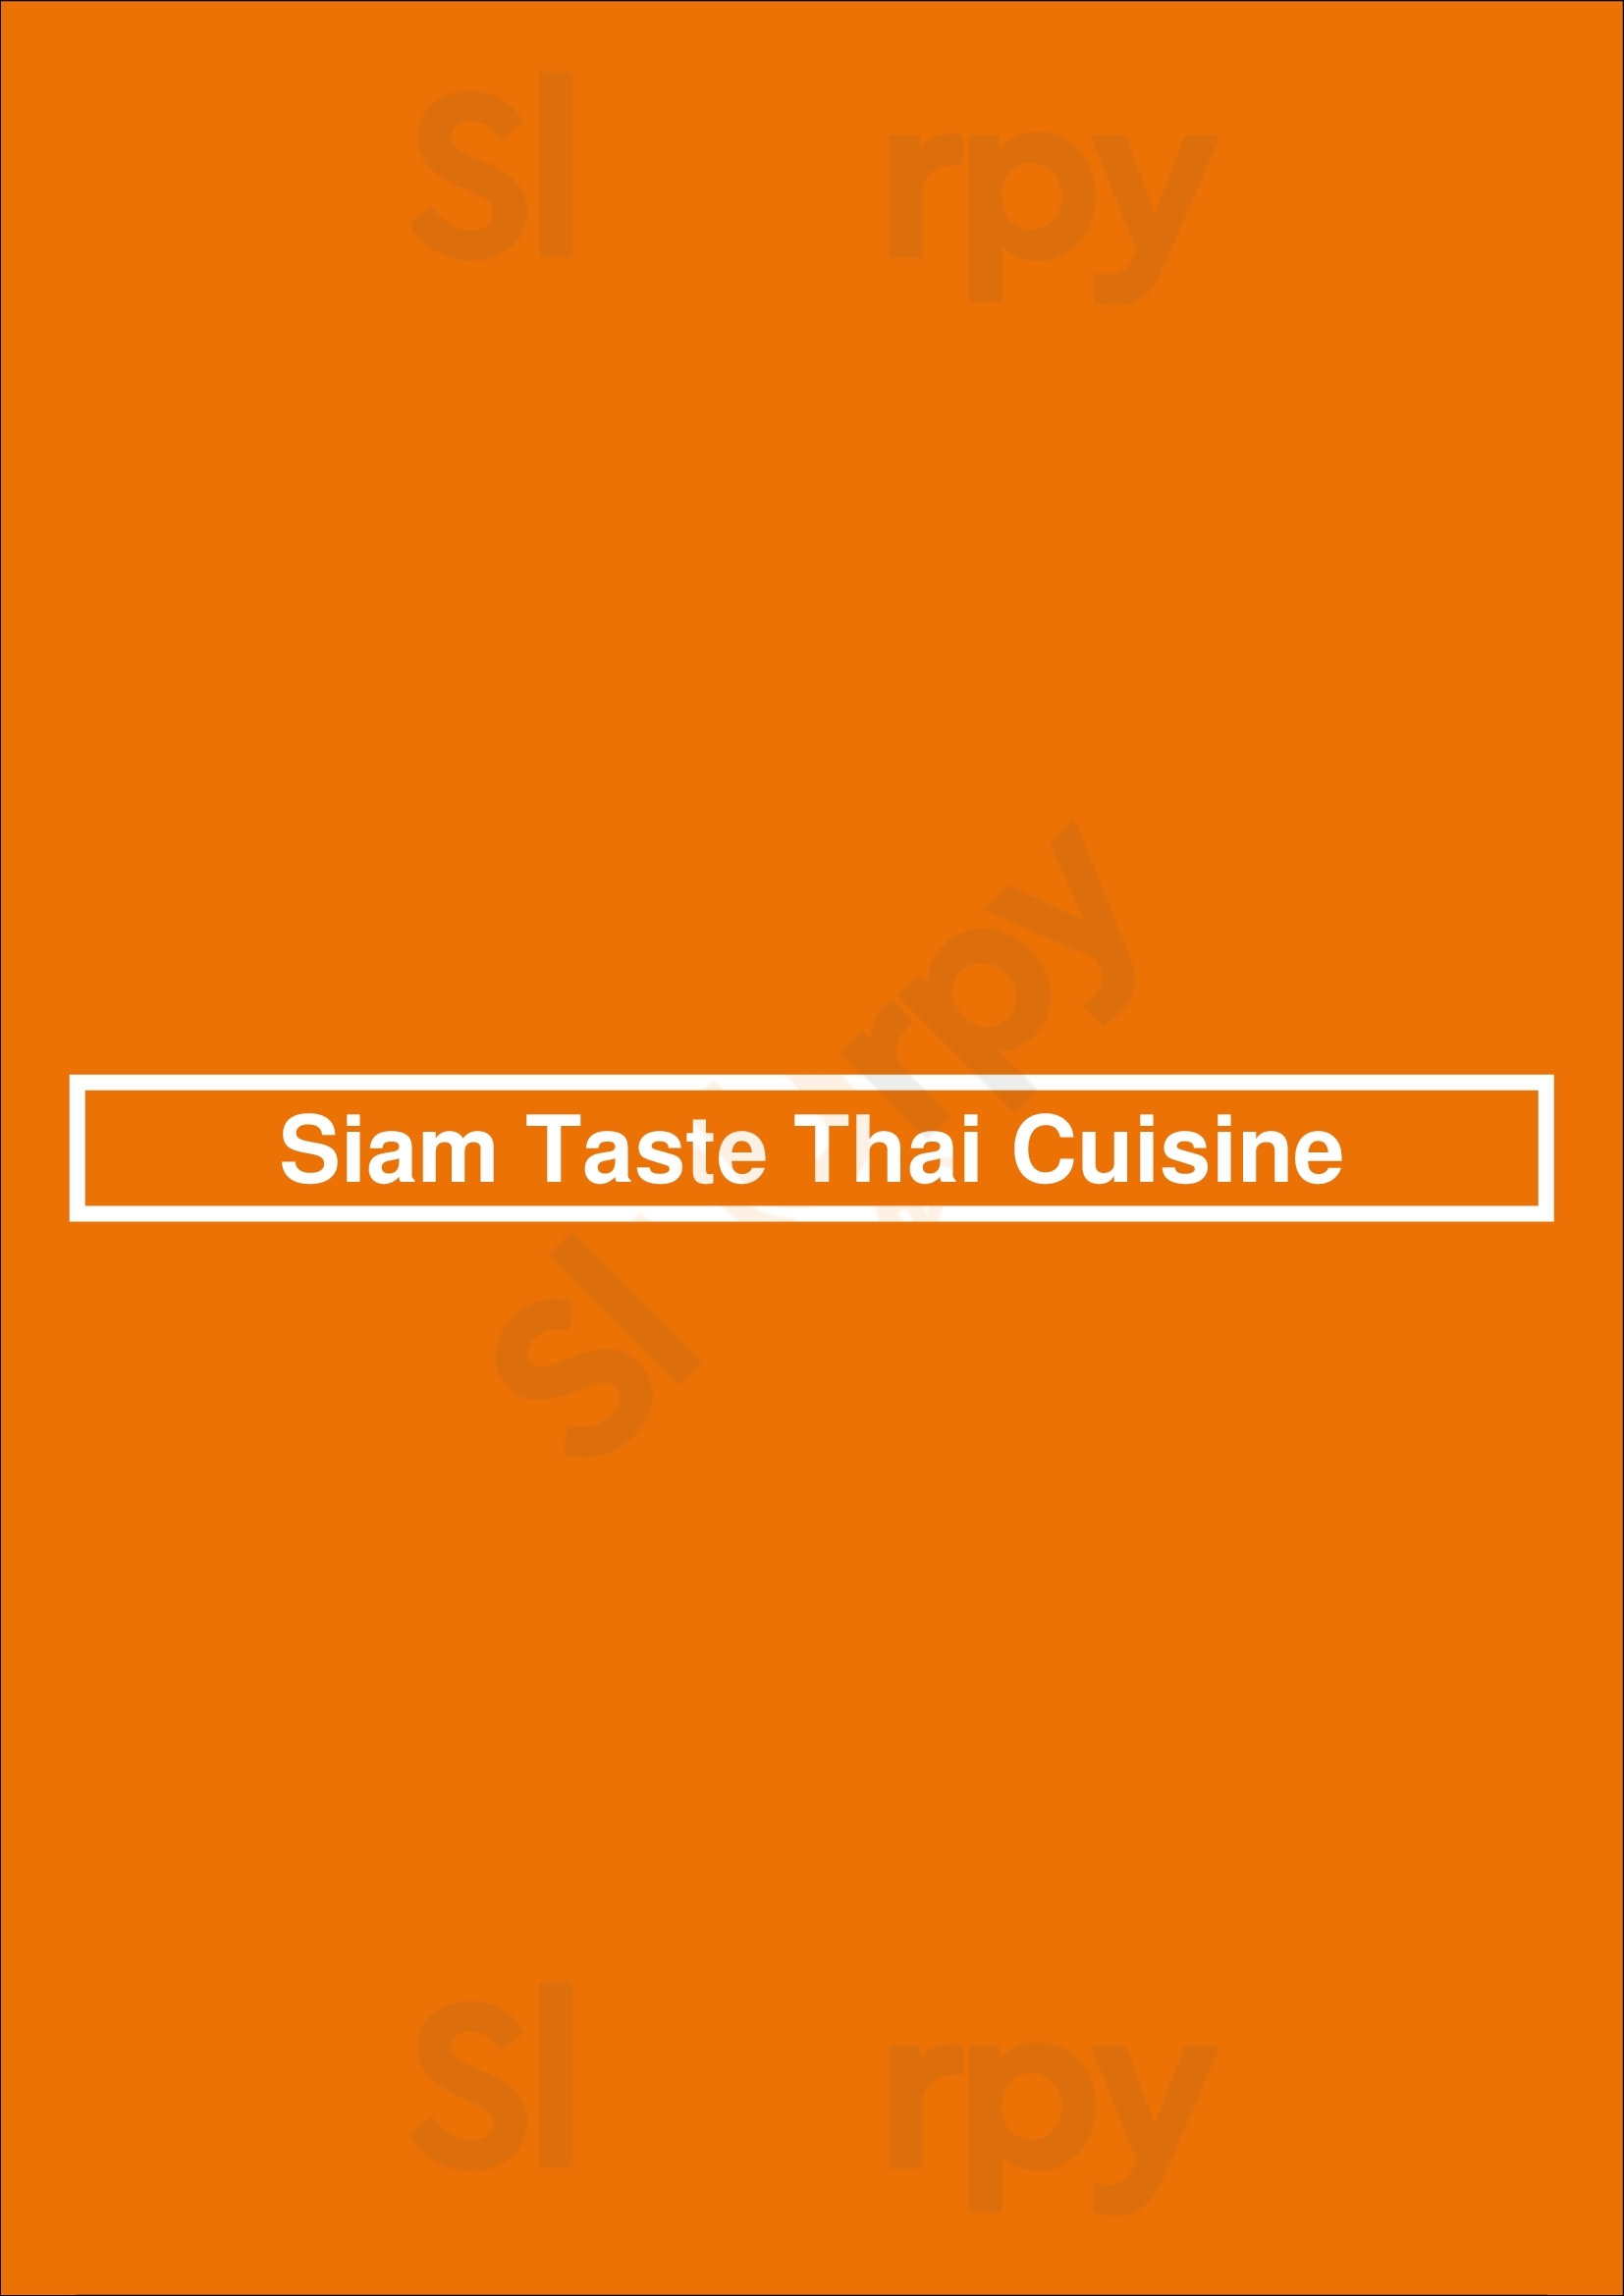 Siam Taste Thai Cuisine Sunnyvale Menu - 1